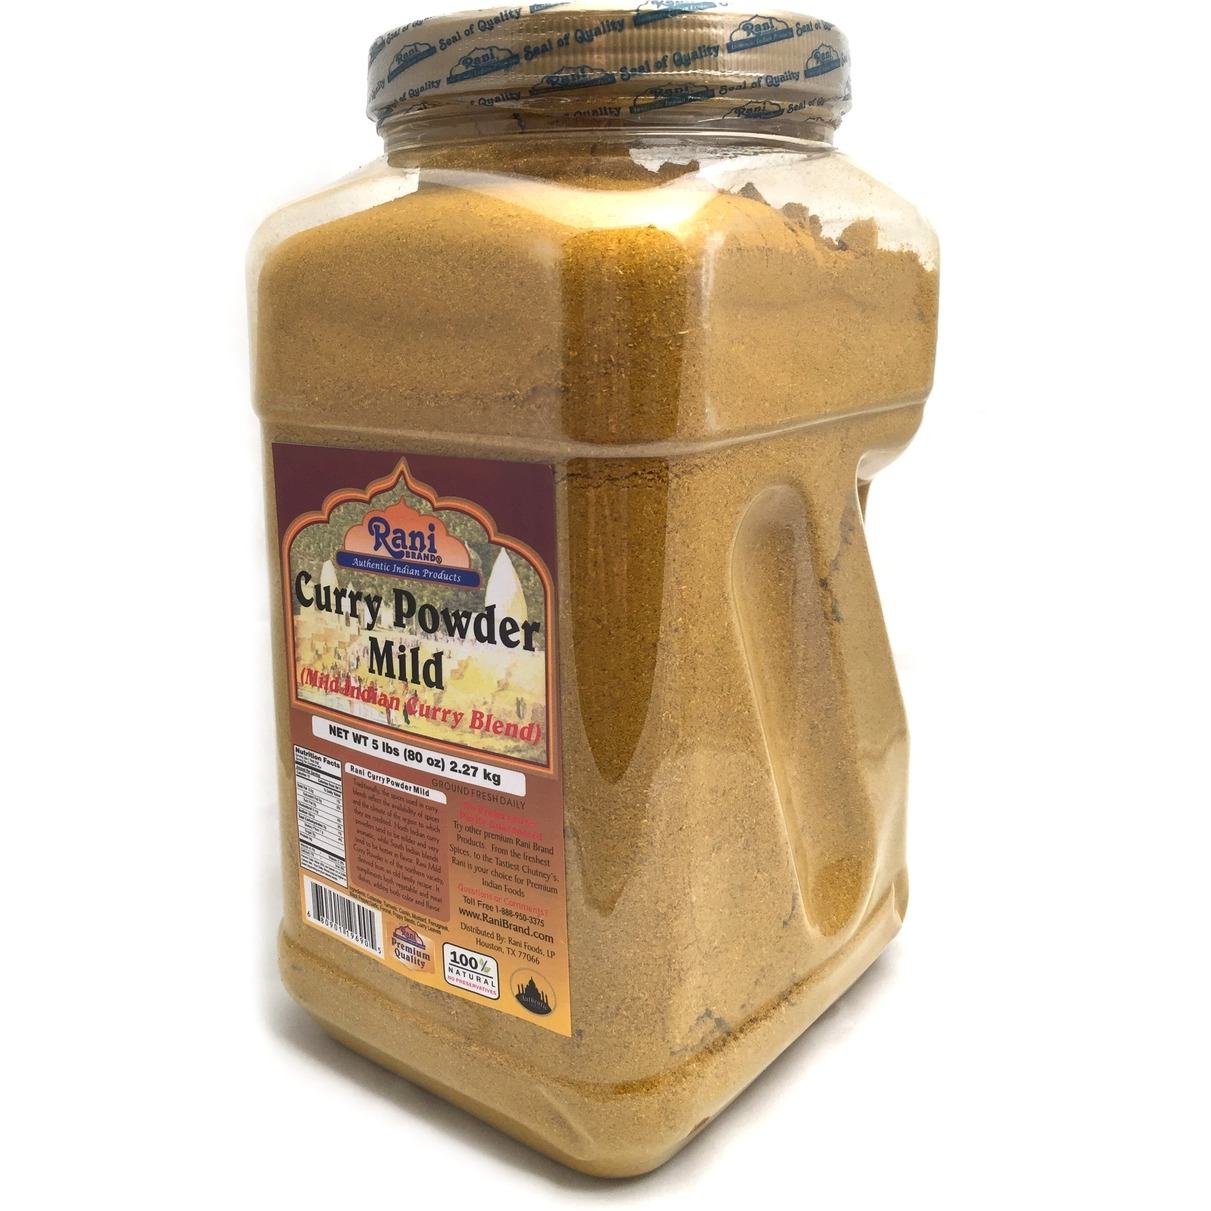 Rani Curry Powder Mild 5lbs (2.27kg)